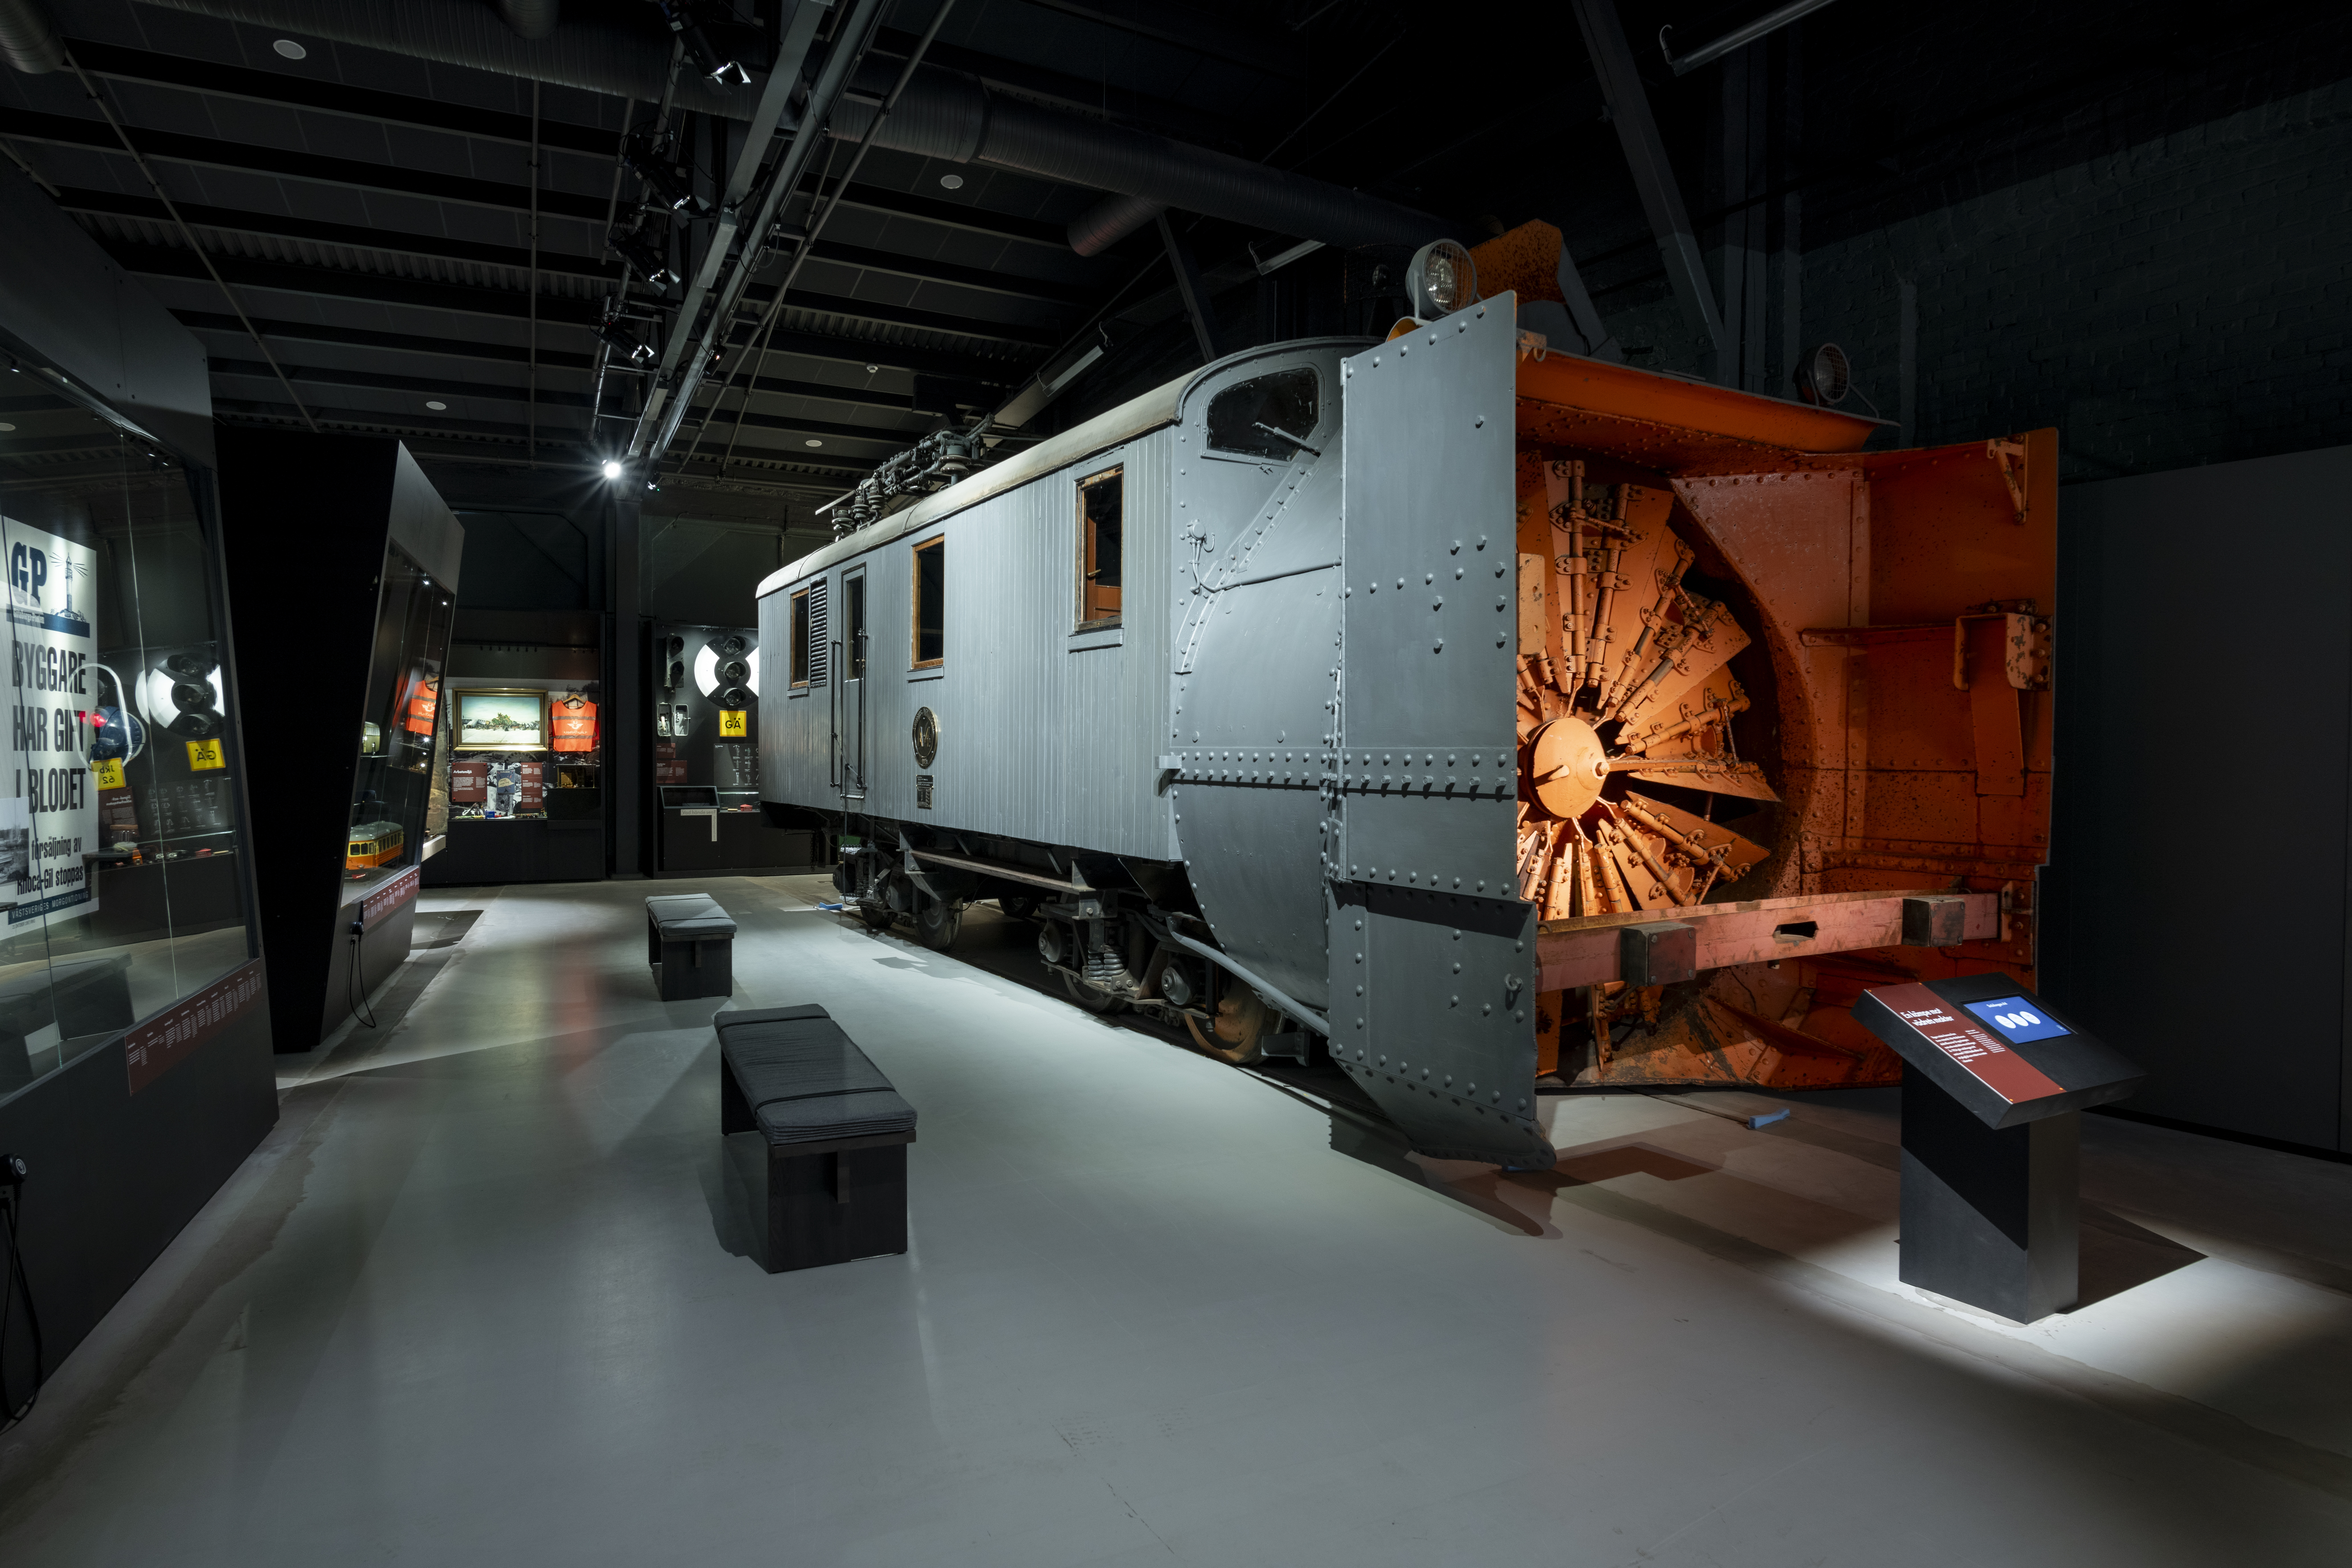 en stor grå tågvagn som användes vid snöröjning står till höger i bild i en utställningshall